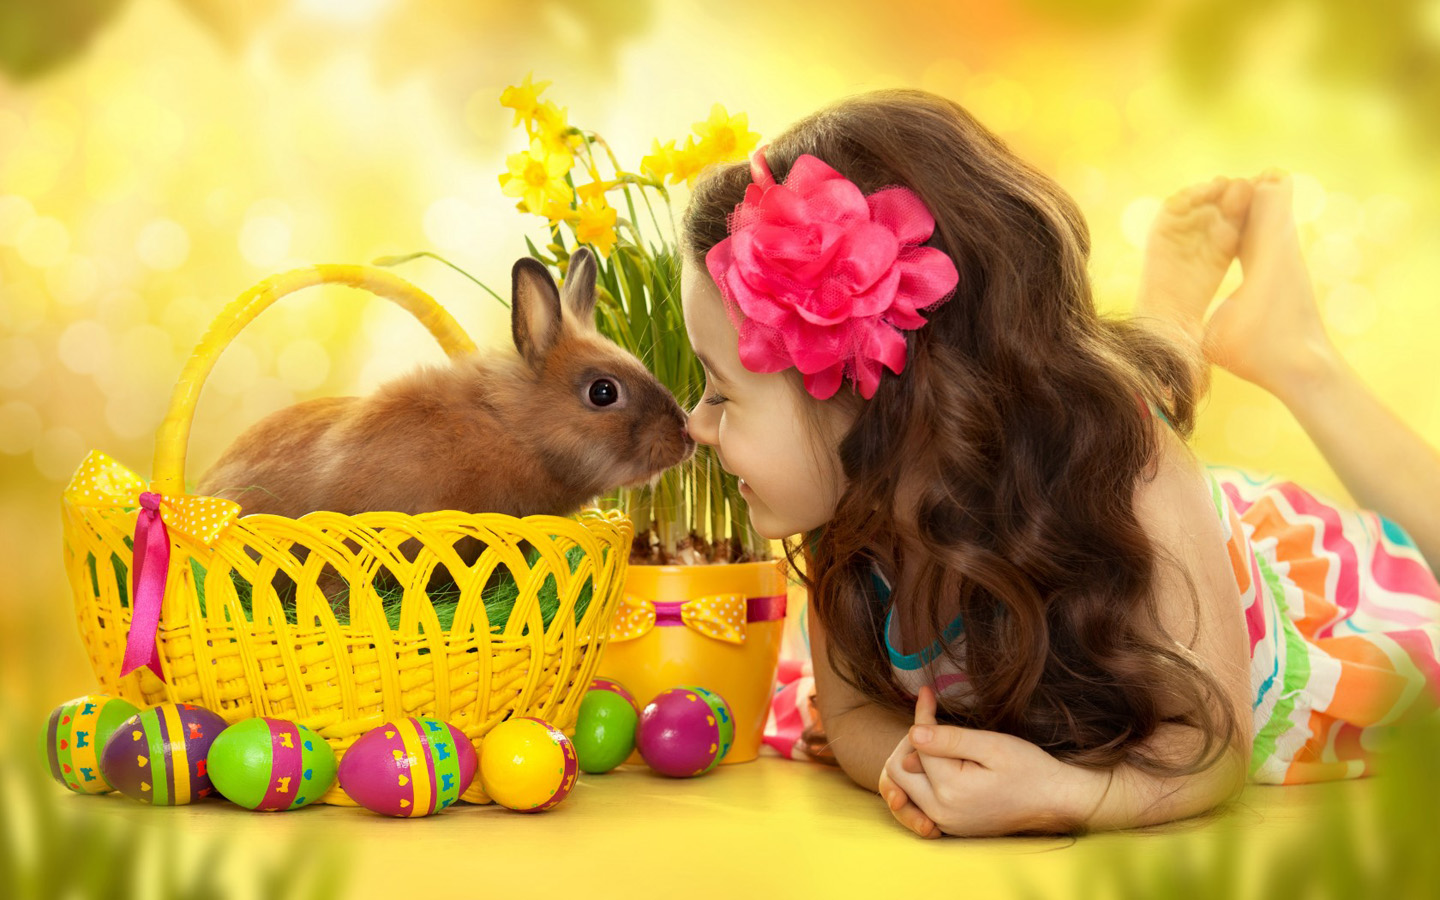  欧美兔子和女孩唯美壁纸 